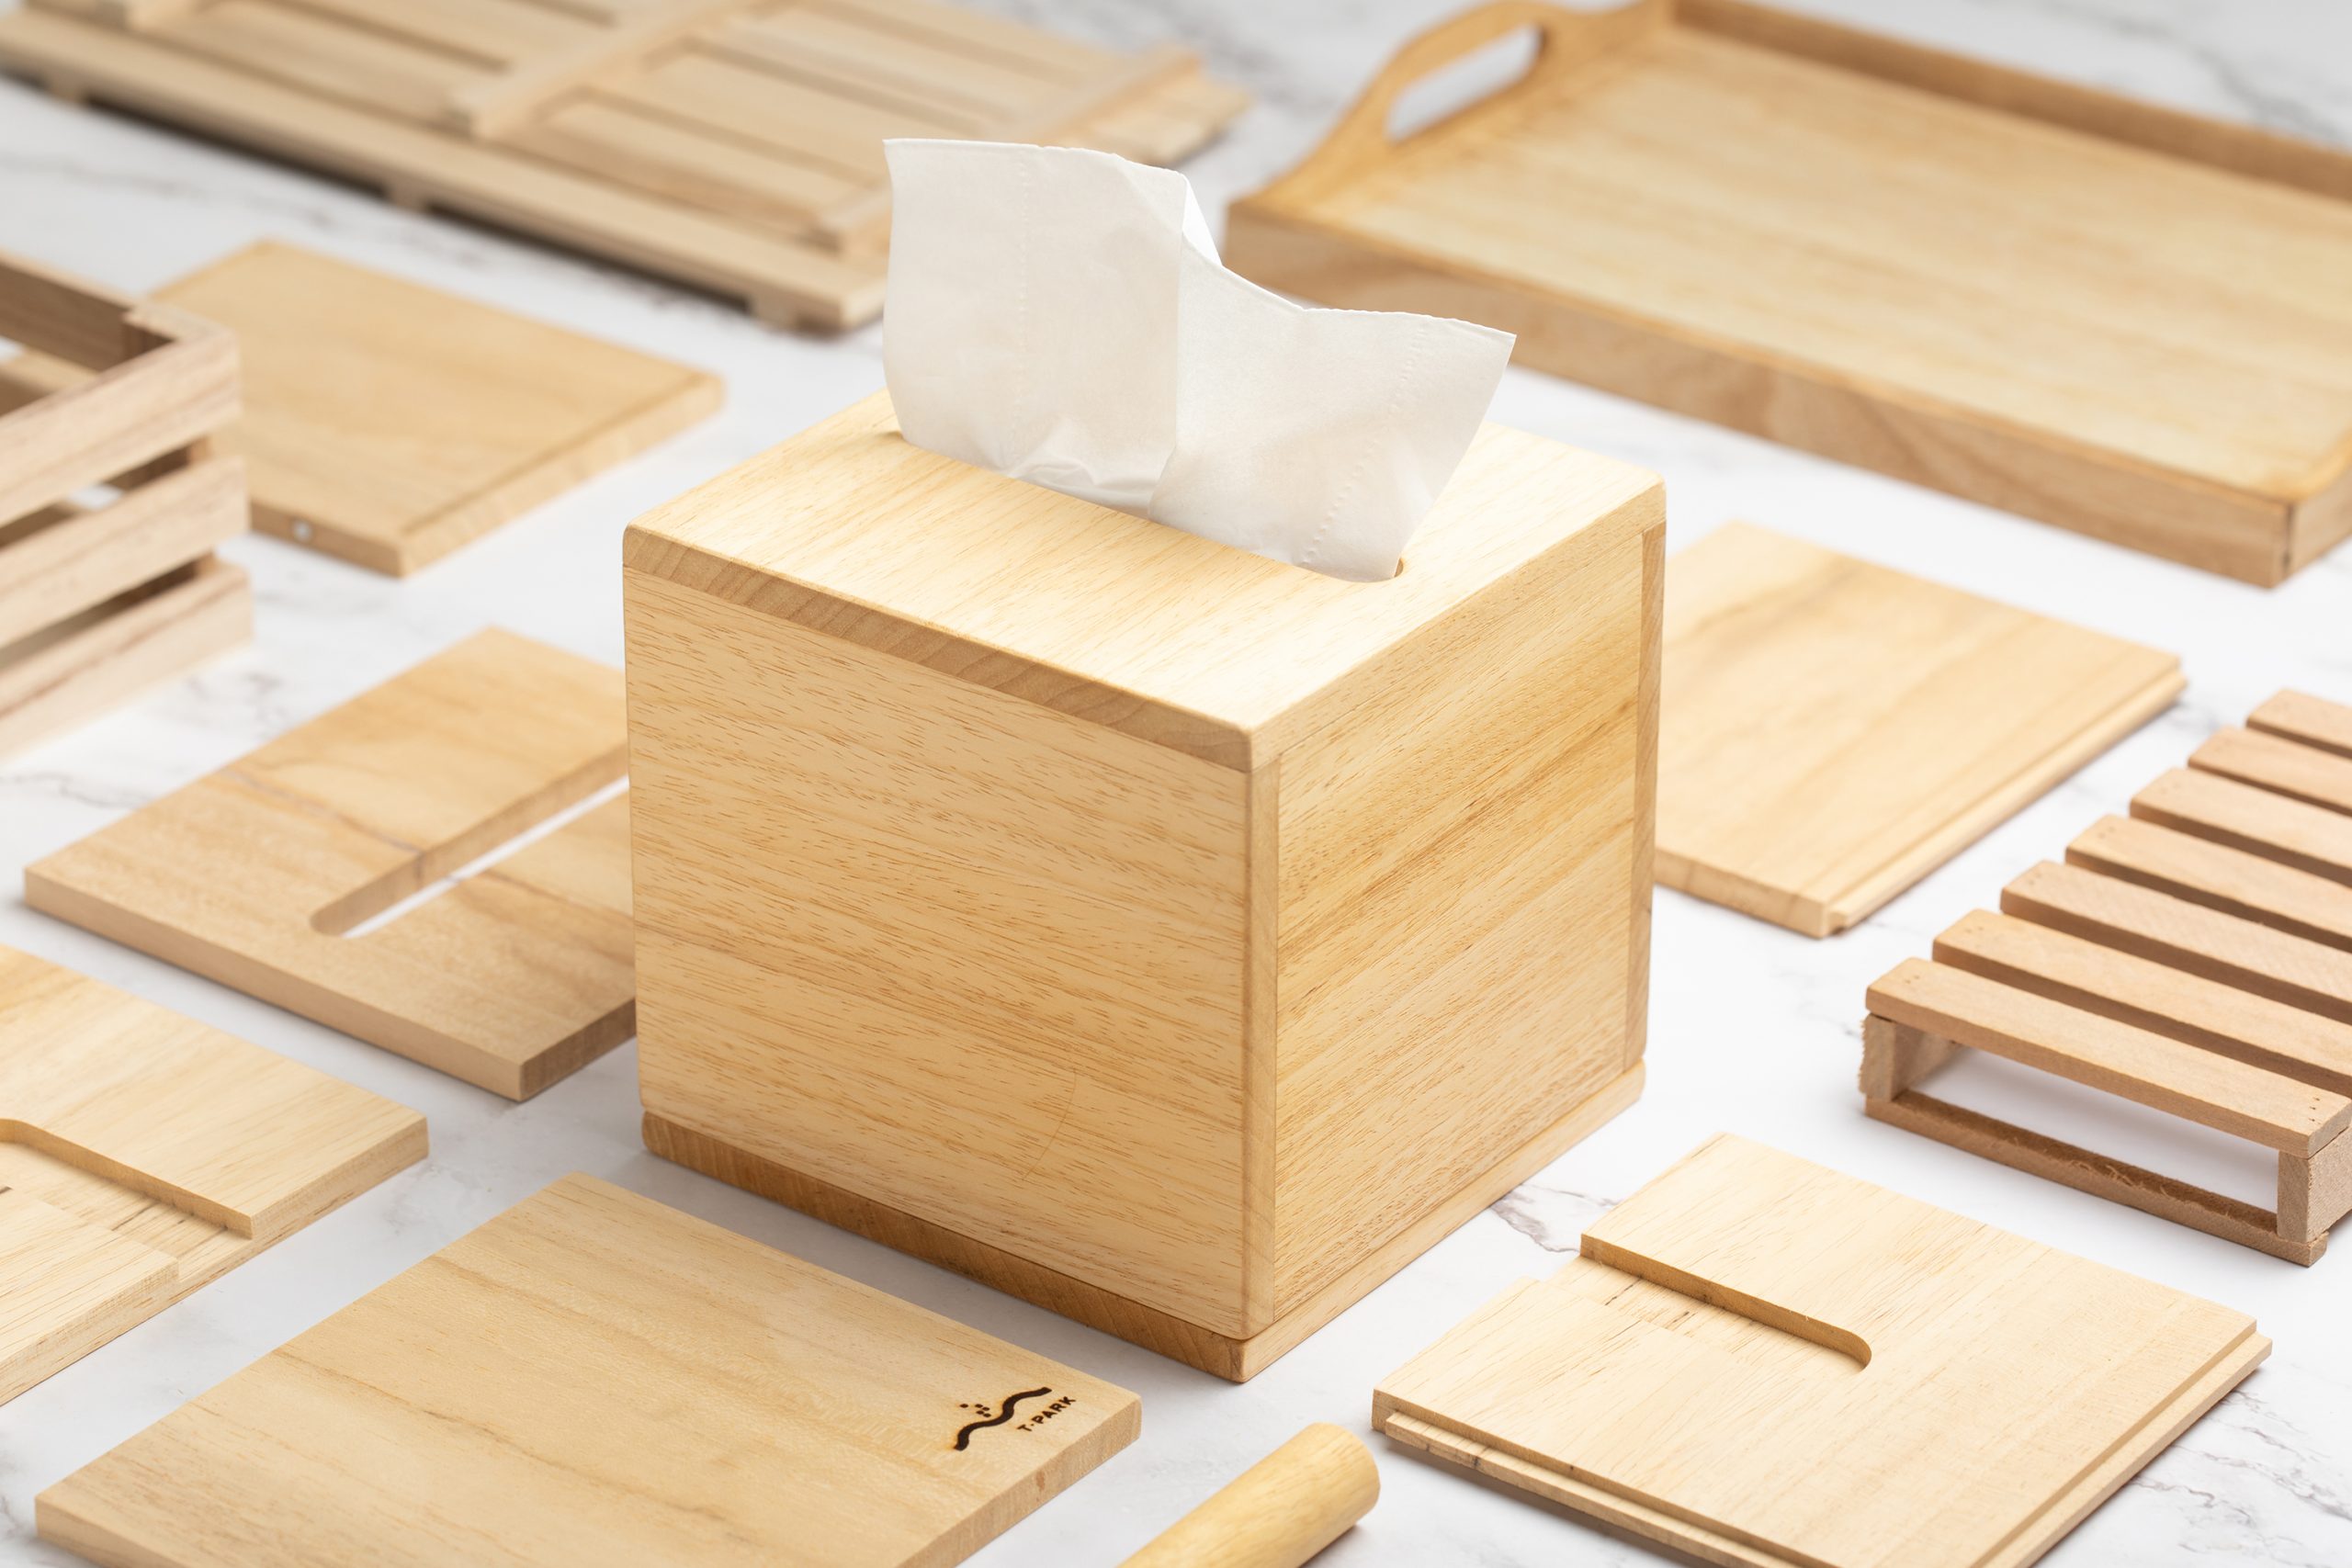 再造木紙巾盒工作坊 (網上活動)